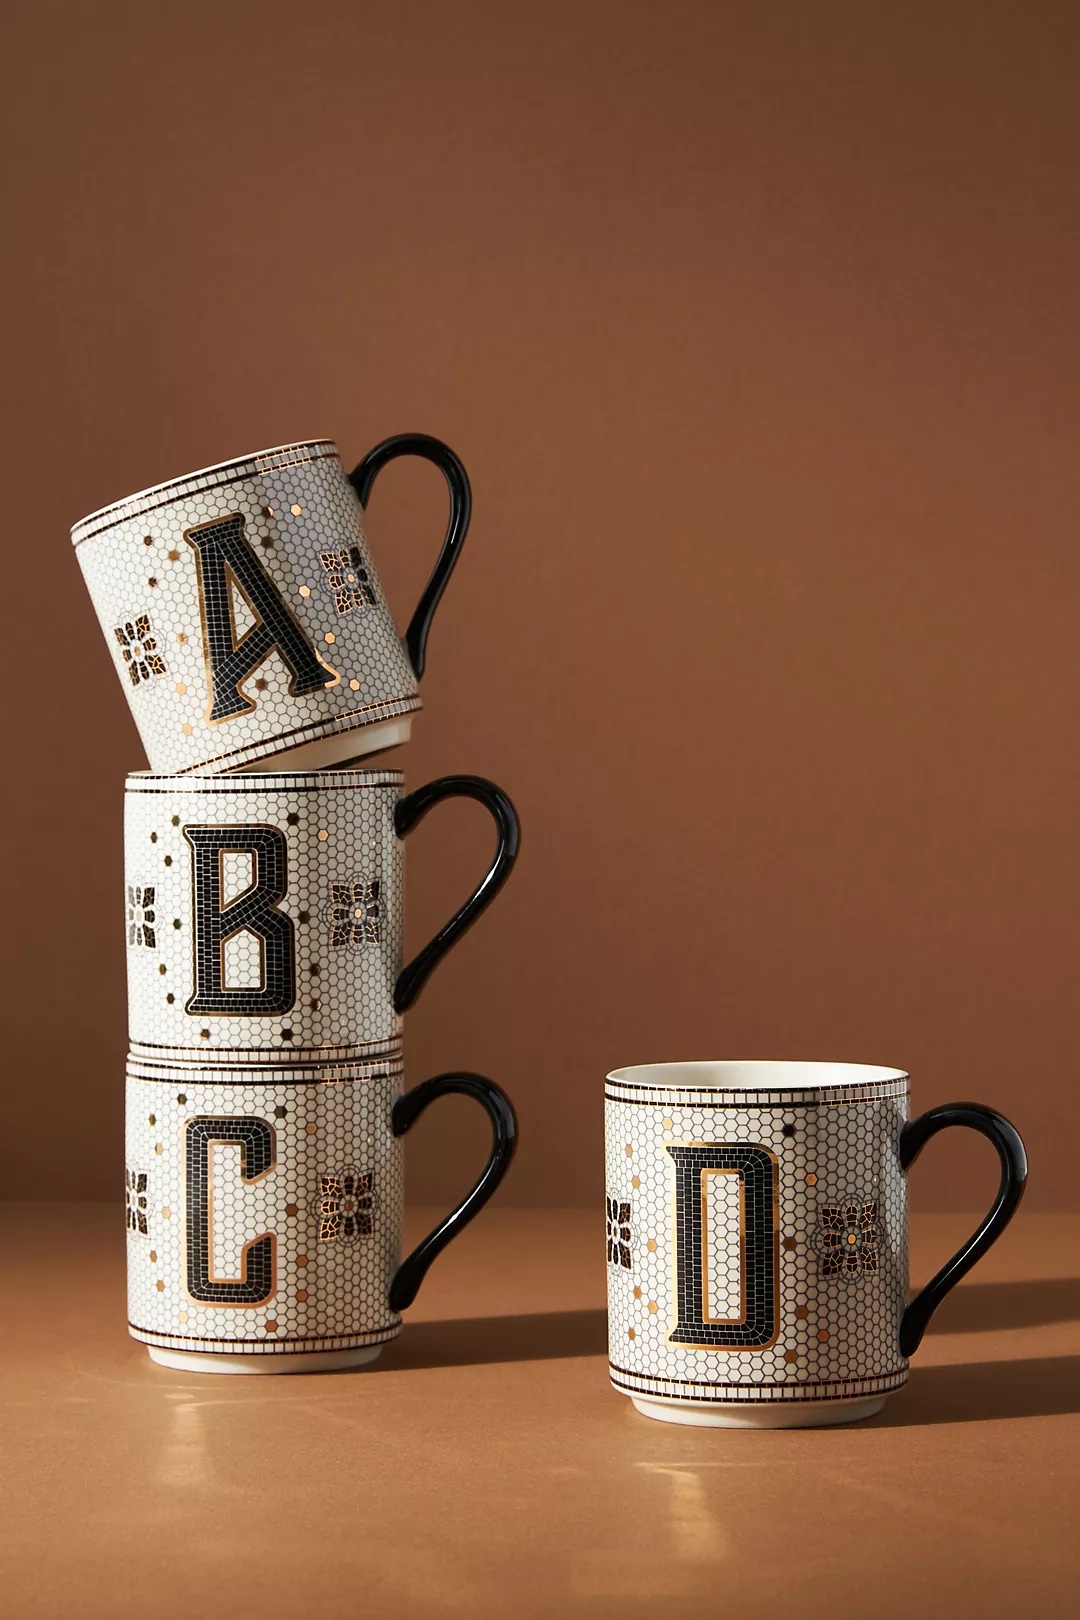 Tiled monogrammed mug from Anthropologie: Best gifts under $15